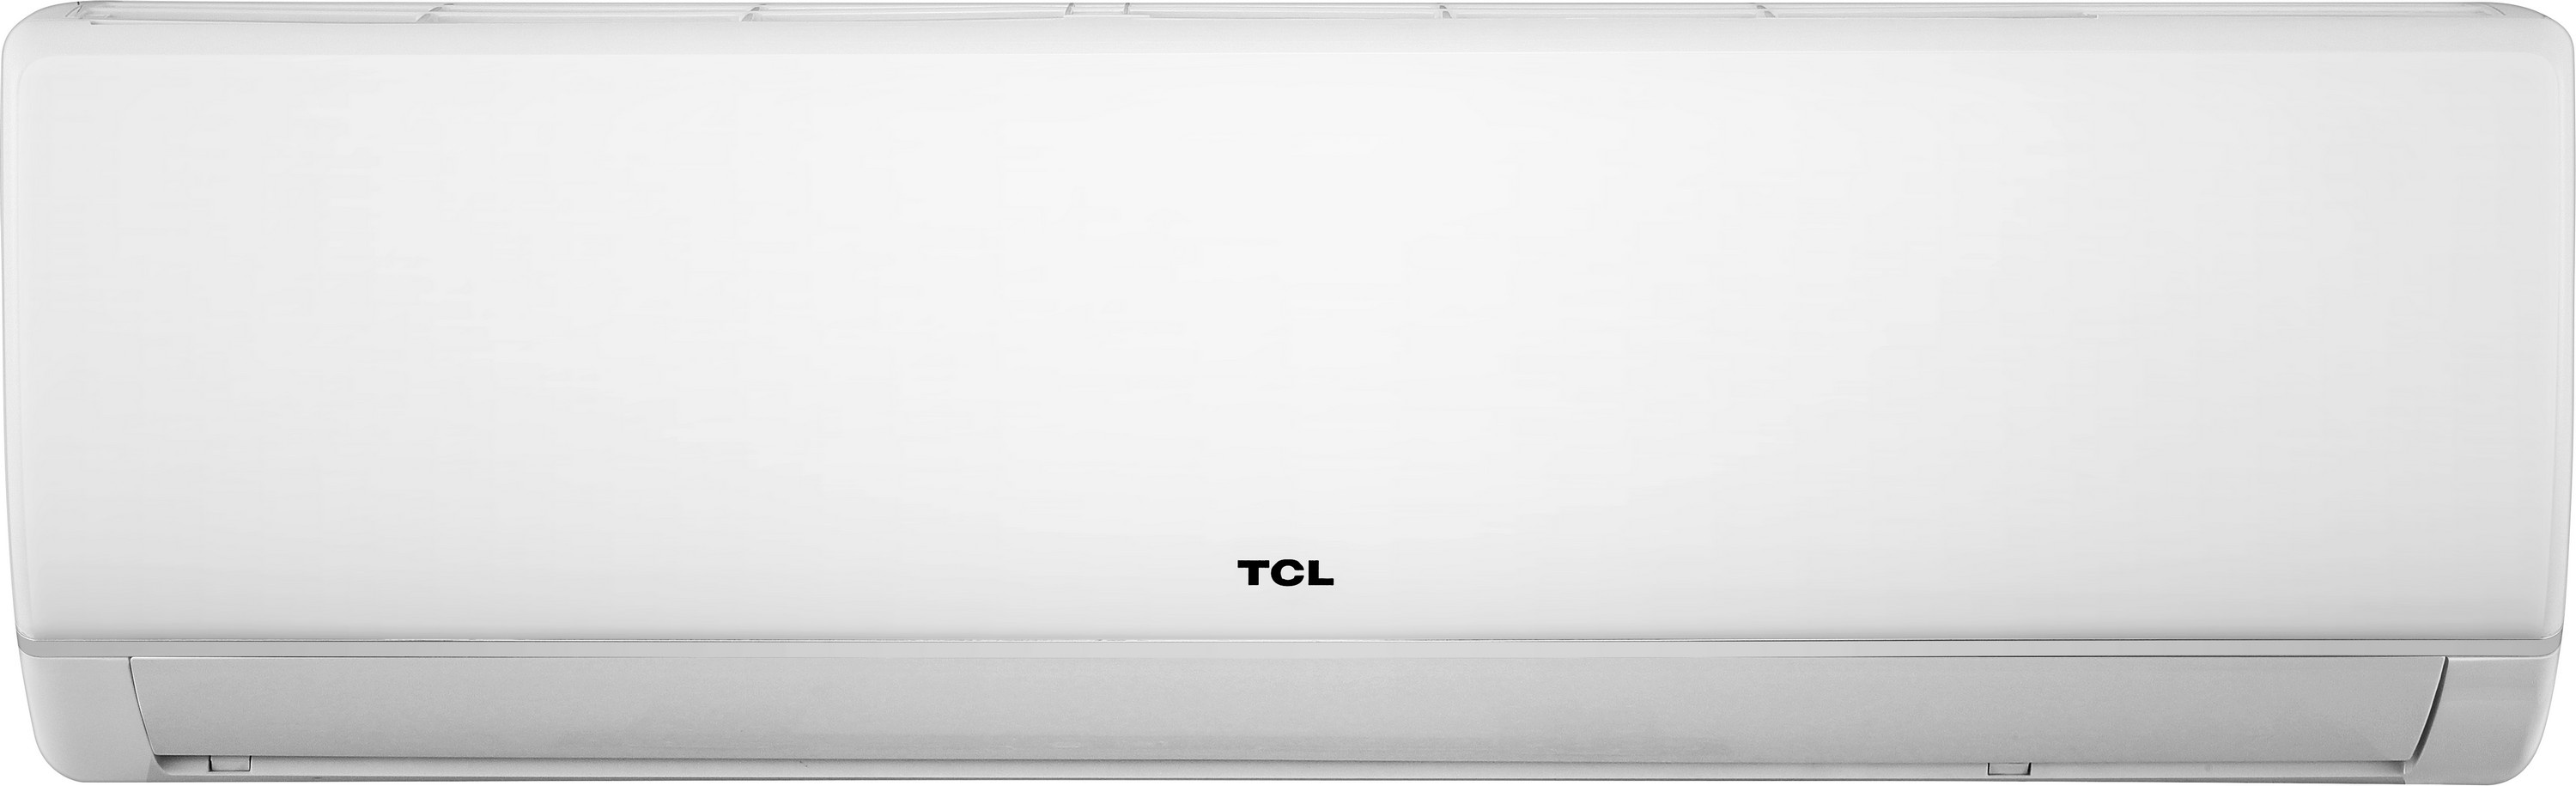 Кондиционер сплит-система TCL Miracle TAC-12CHSA/VB цена 0.00 грн - фотография 2